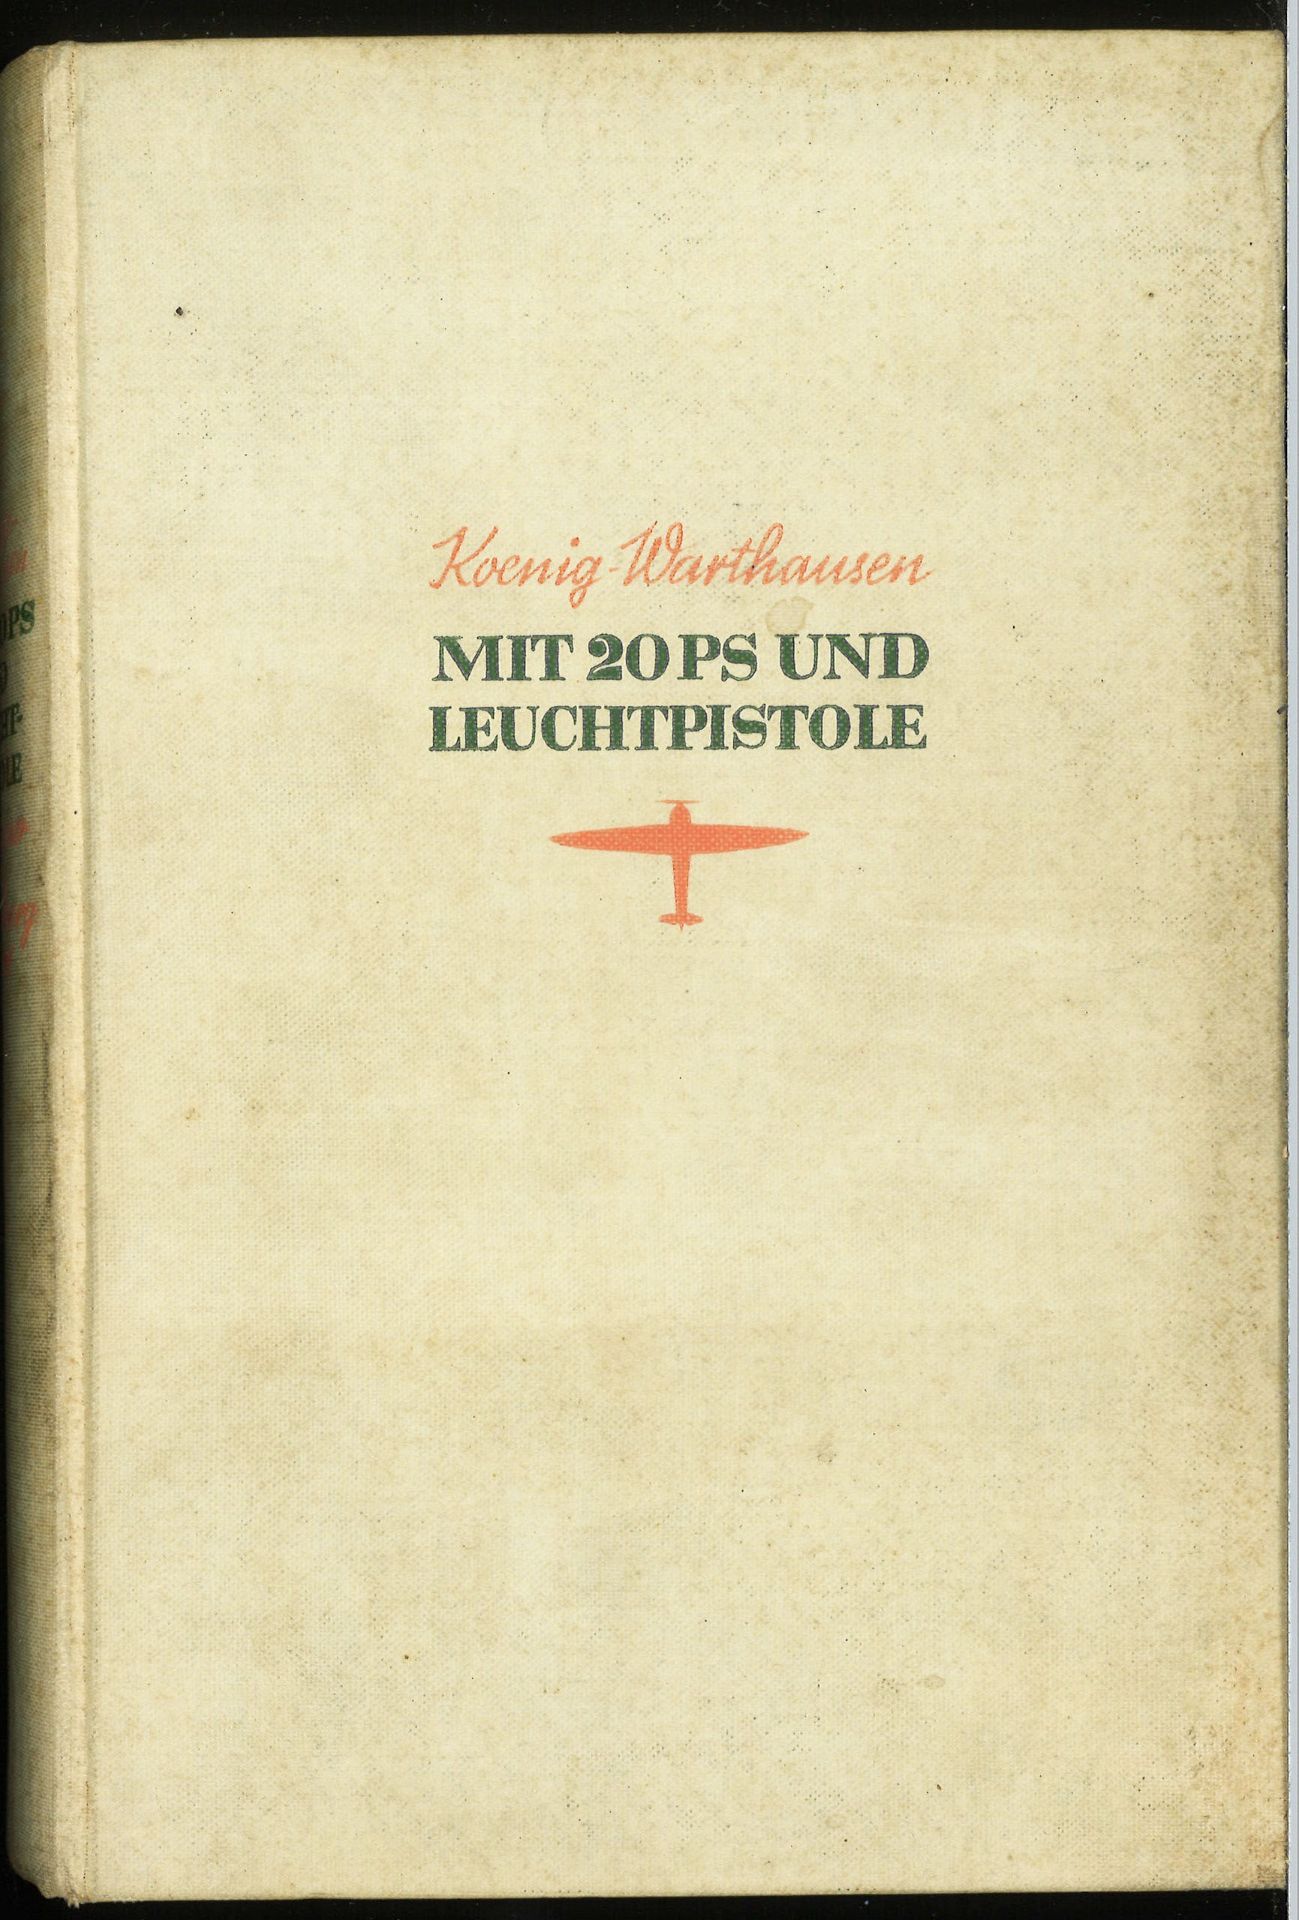 F. R. Freiherr von Koenig - Warhausen, Mit 20 PS und Leuchtpistole - Abenteur des